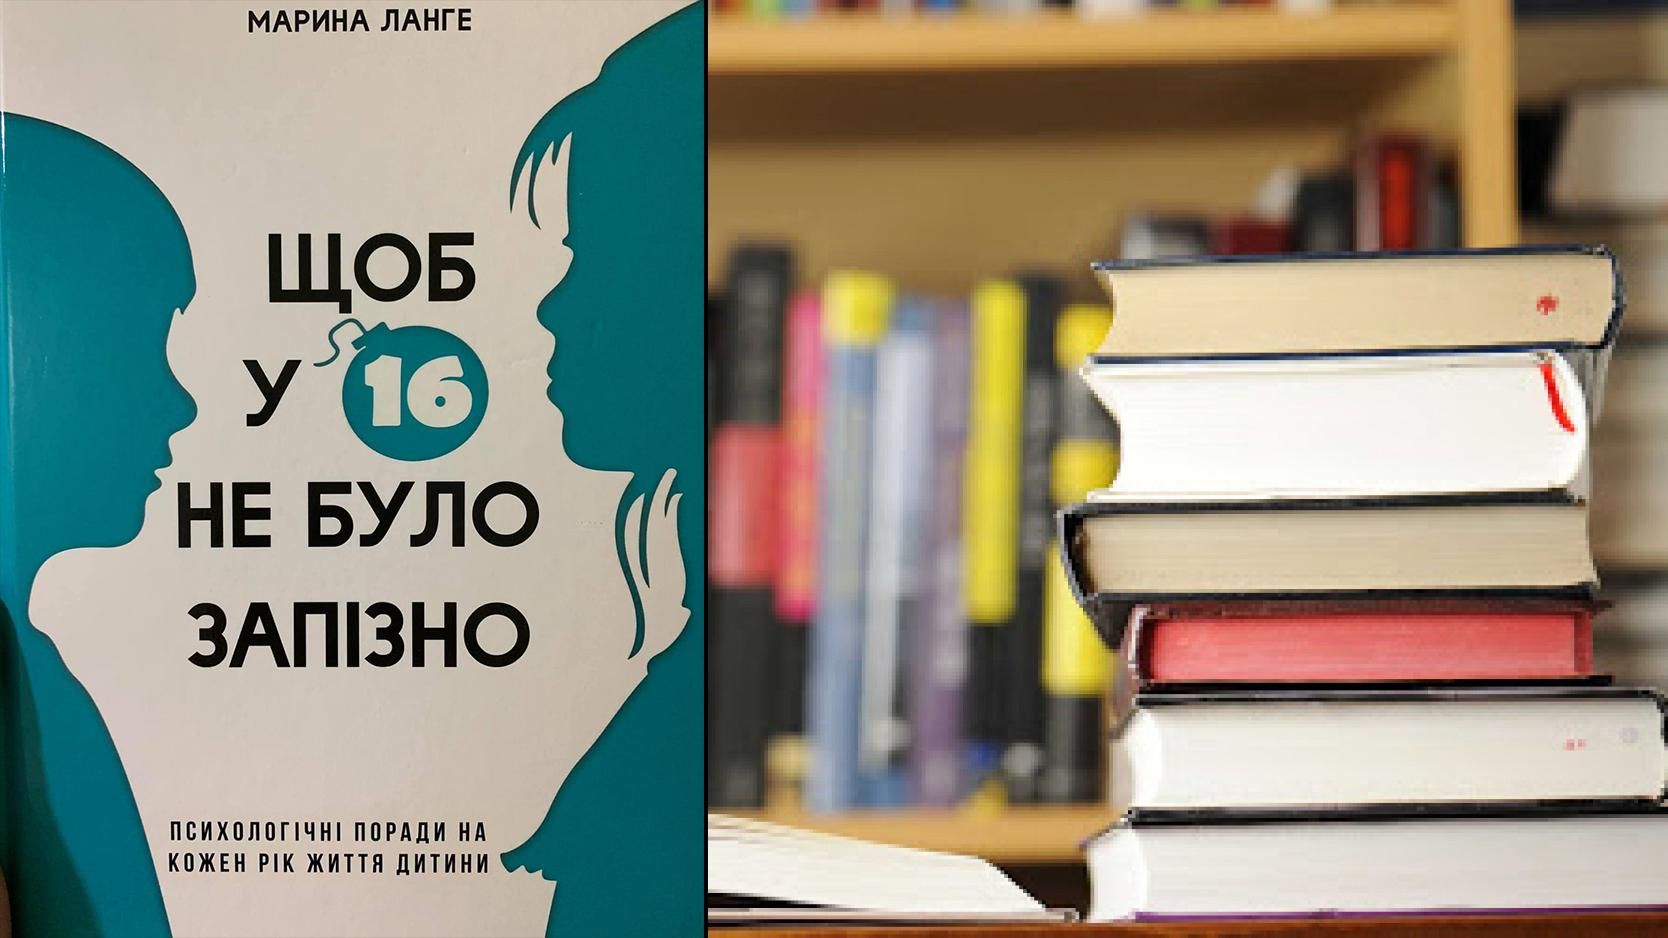 "150 сантиметрів у спідниці": до бібліотек закуплять обурливі книги про гендер - Україна новини - Освіта